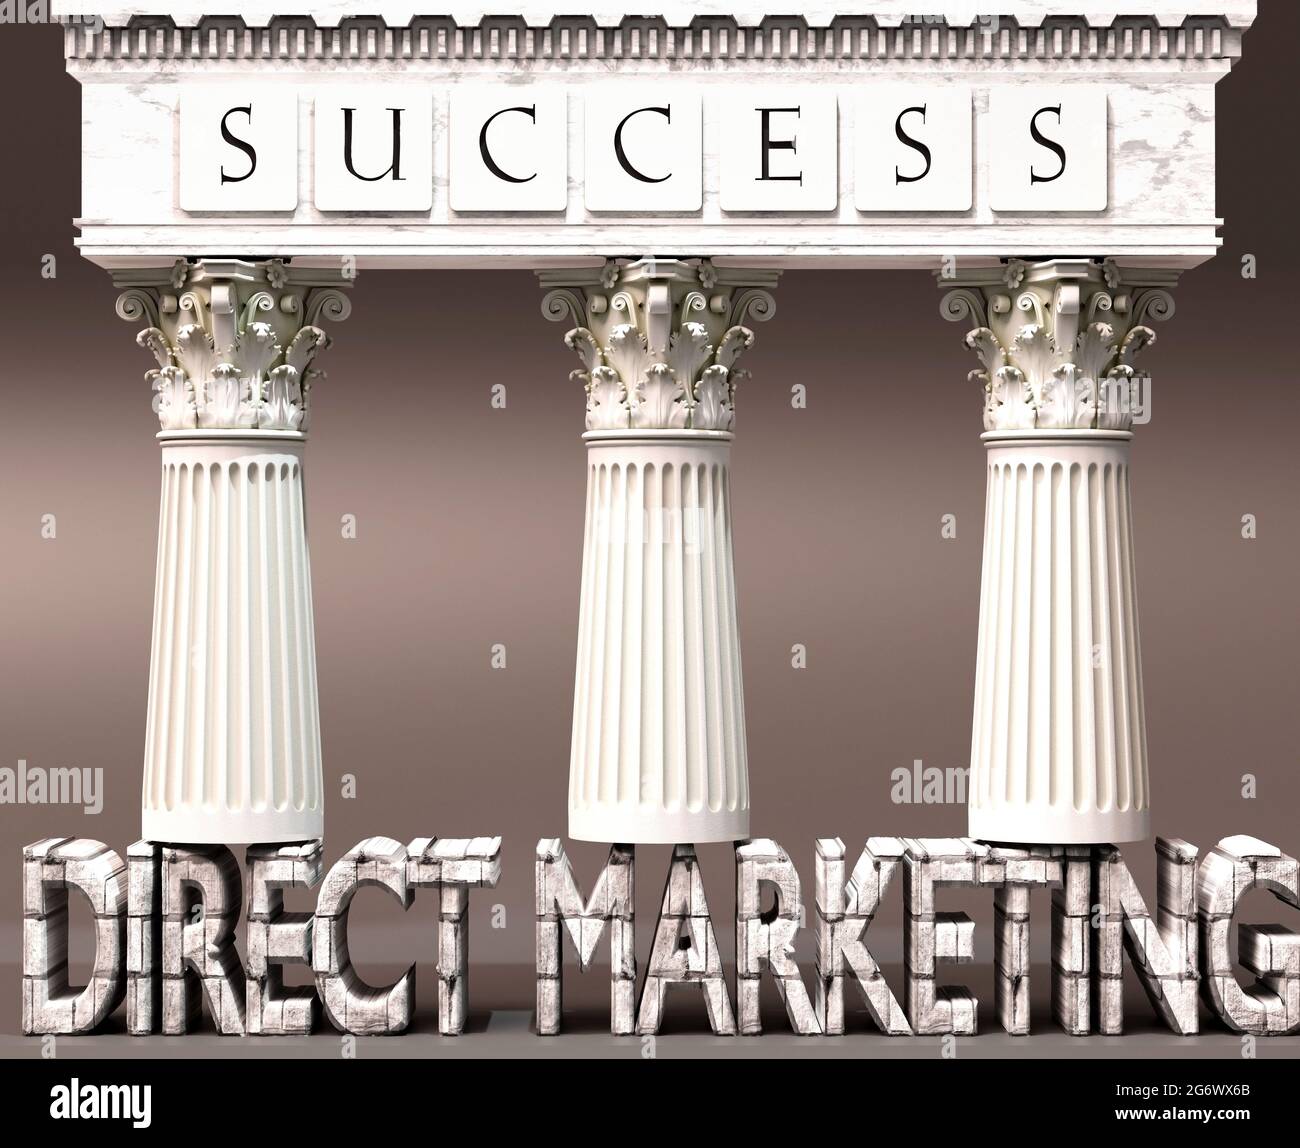 Direktmarketing als Grundlage für den Erfolg – symbolisiert durch Säulen des Erfolgs, unterstützt durch Direktmarketing, um zu zeigen, dass es für die Erreichung unerlässlich ist Stockfoto